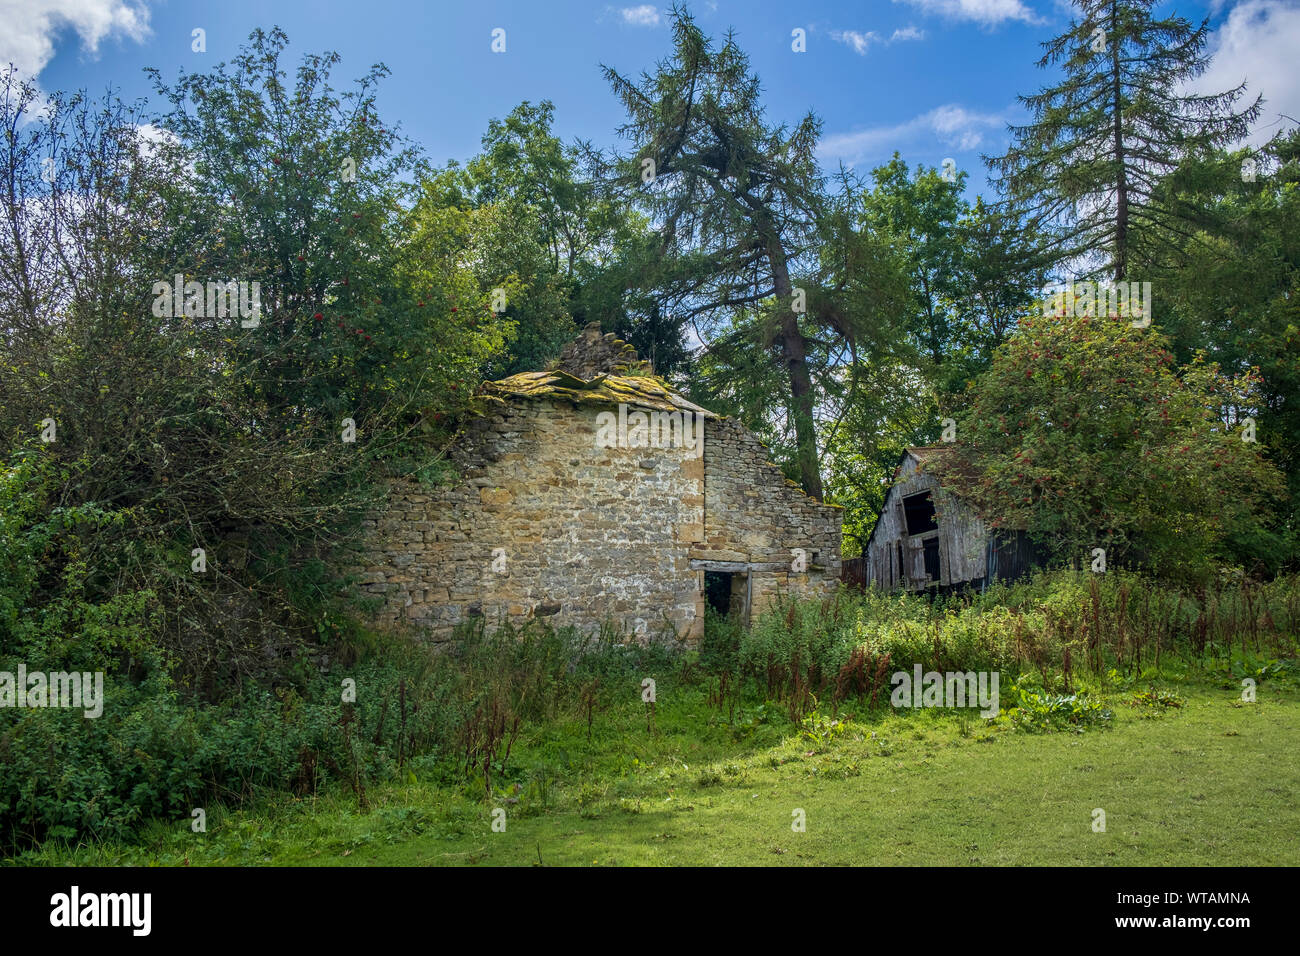 Le rovine di una casa di campagna inglese e restituita alla natura -abbandonate e la rovina di una casa colonica e fienile ricoperta da vegetazione ed alberi Foto Stock